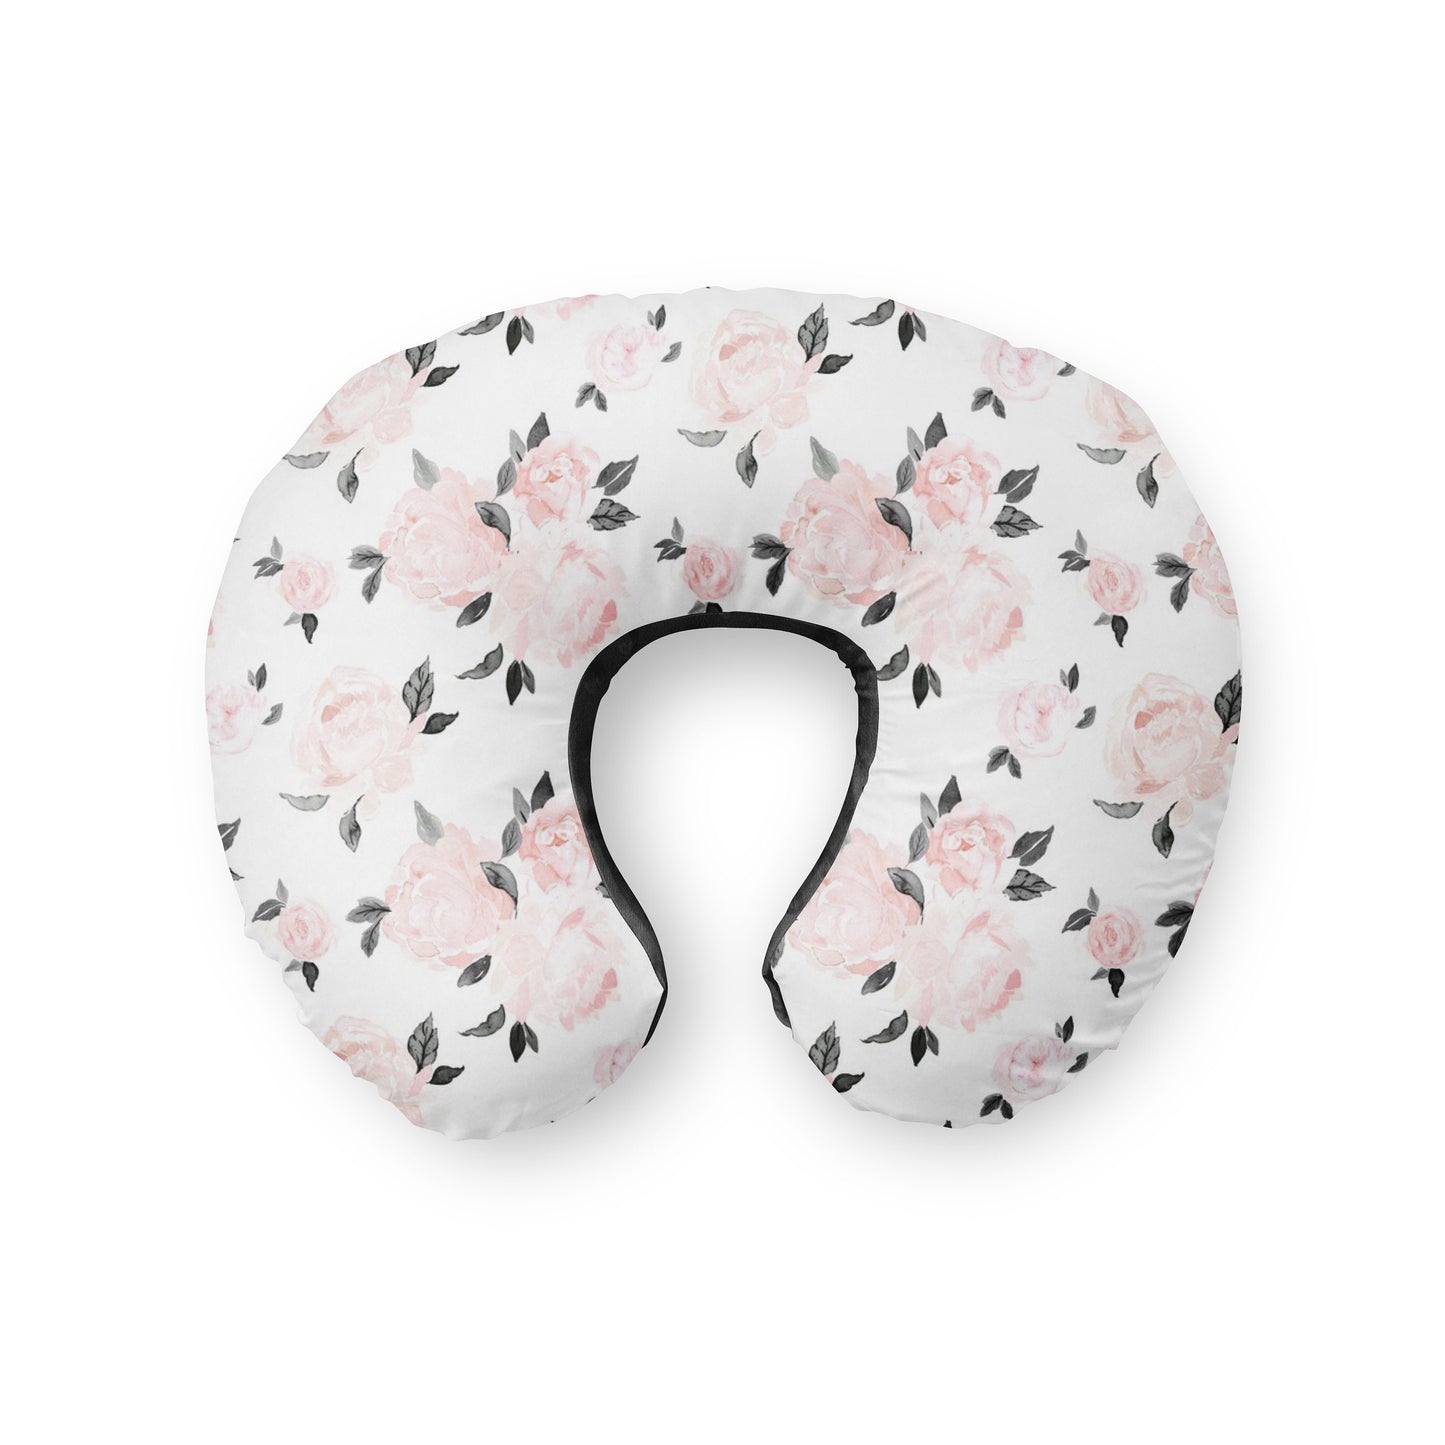 Nursing Pillow Cover. Pink floral vintage blush black pink minky